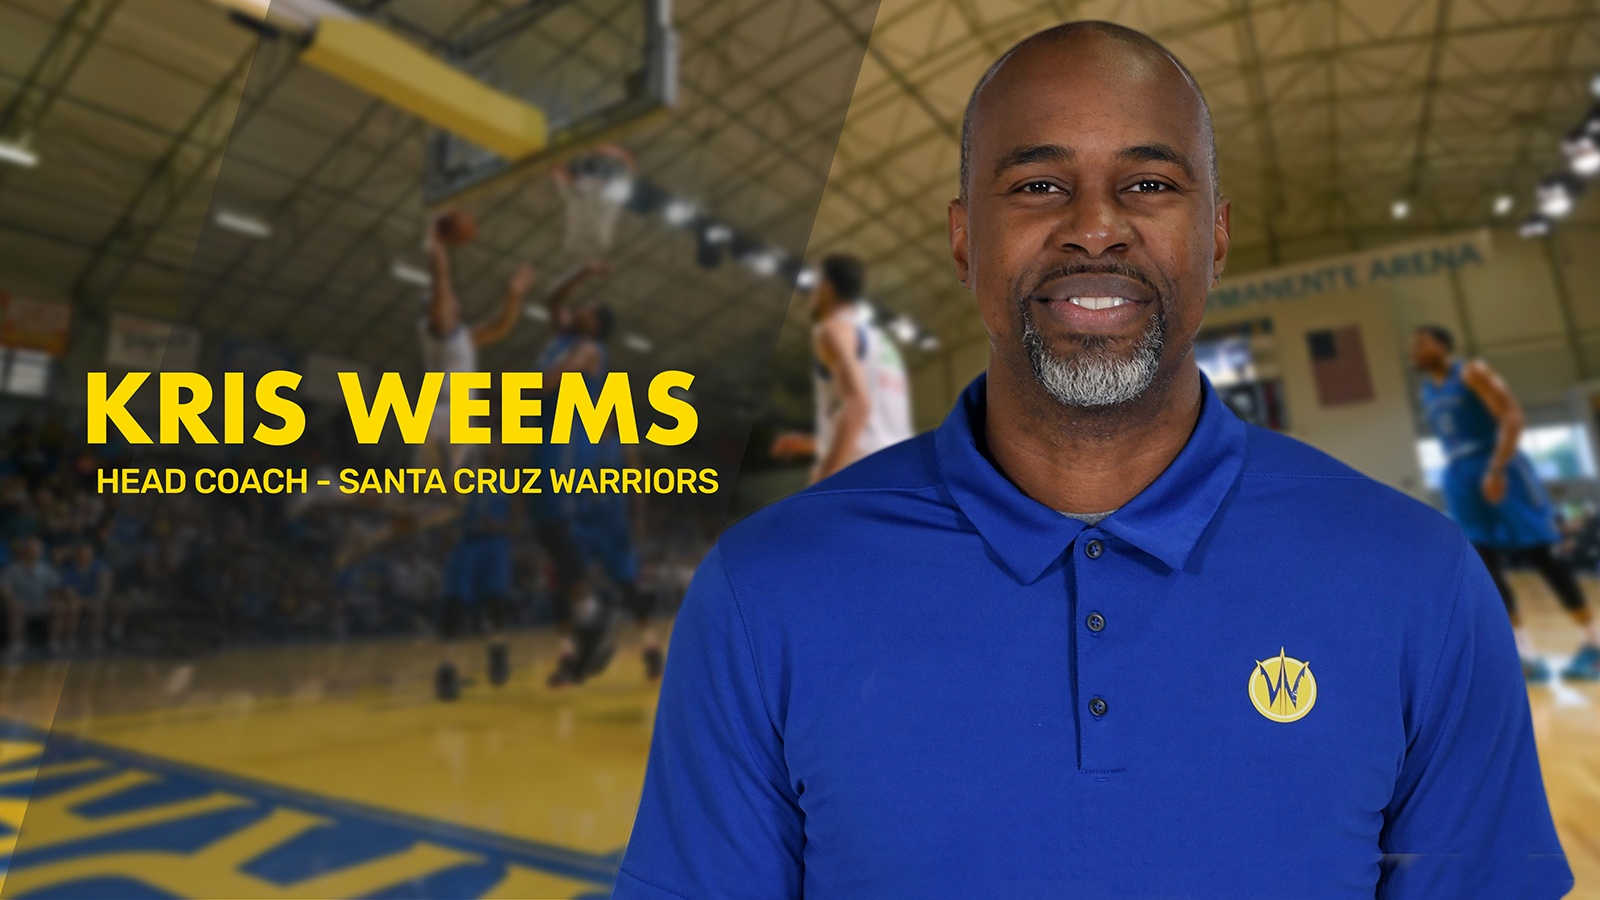 KRIS WEEMS | Head Player Development, Warriors Professional Basketball Team